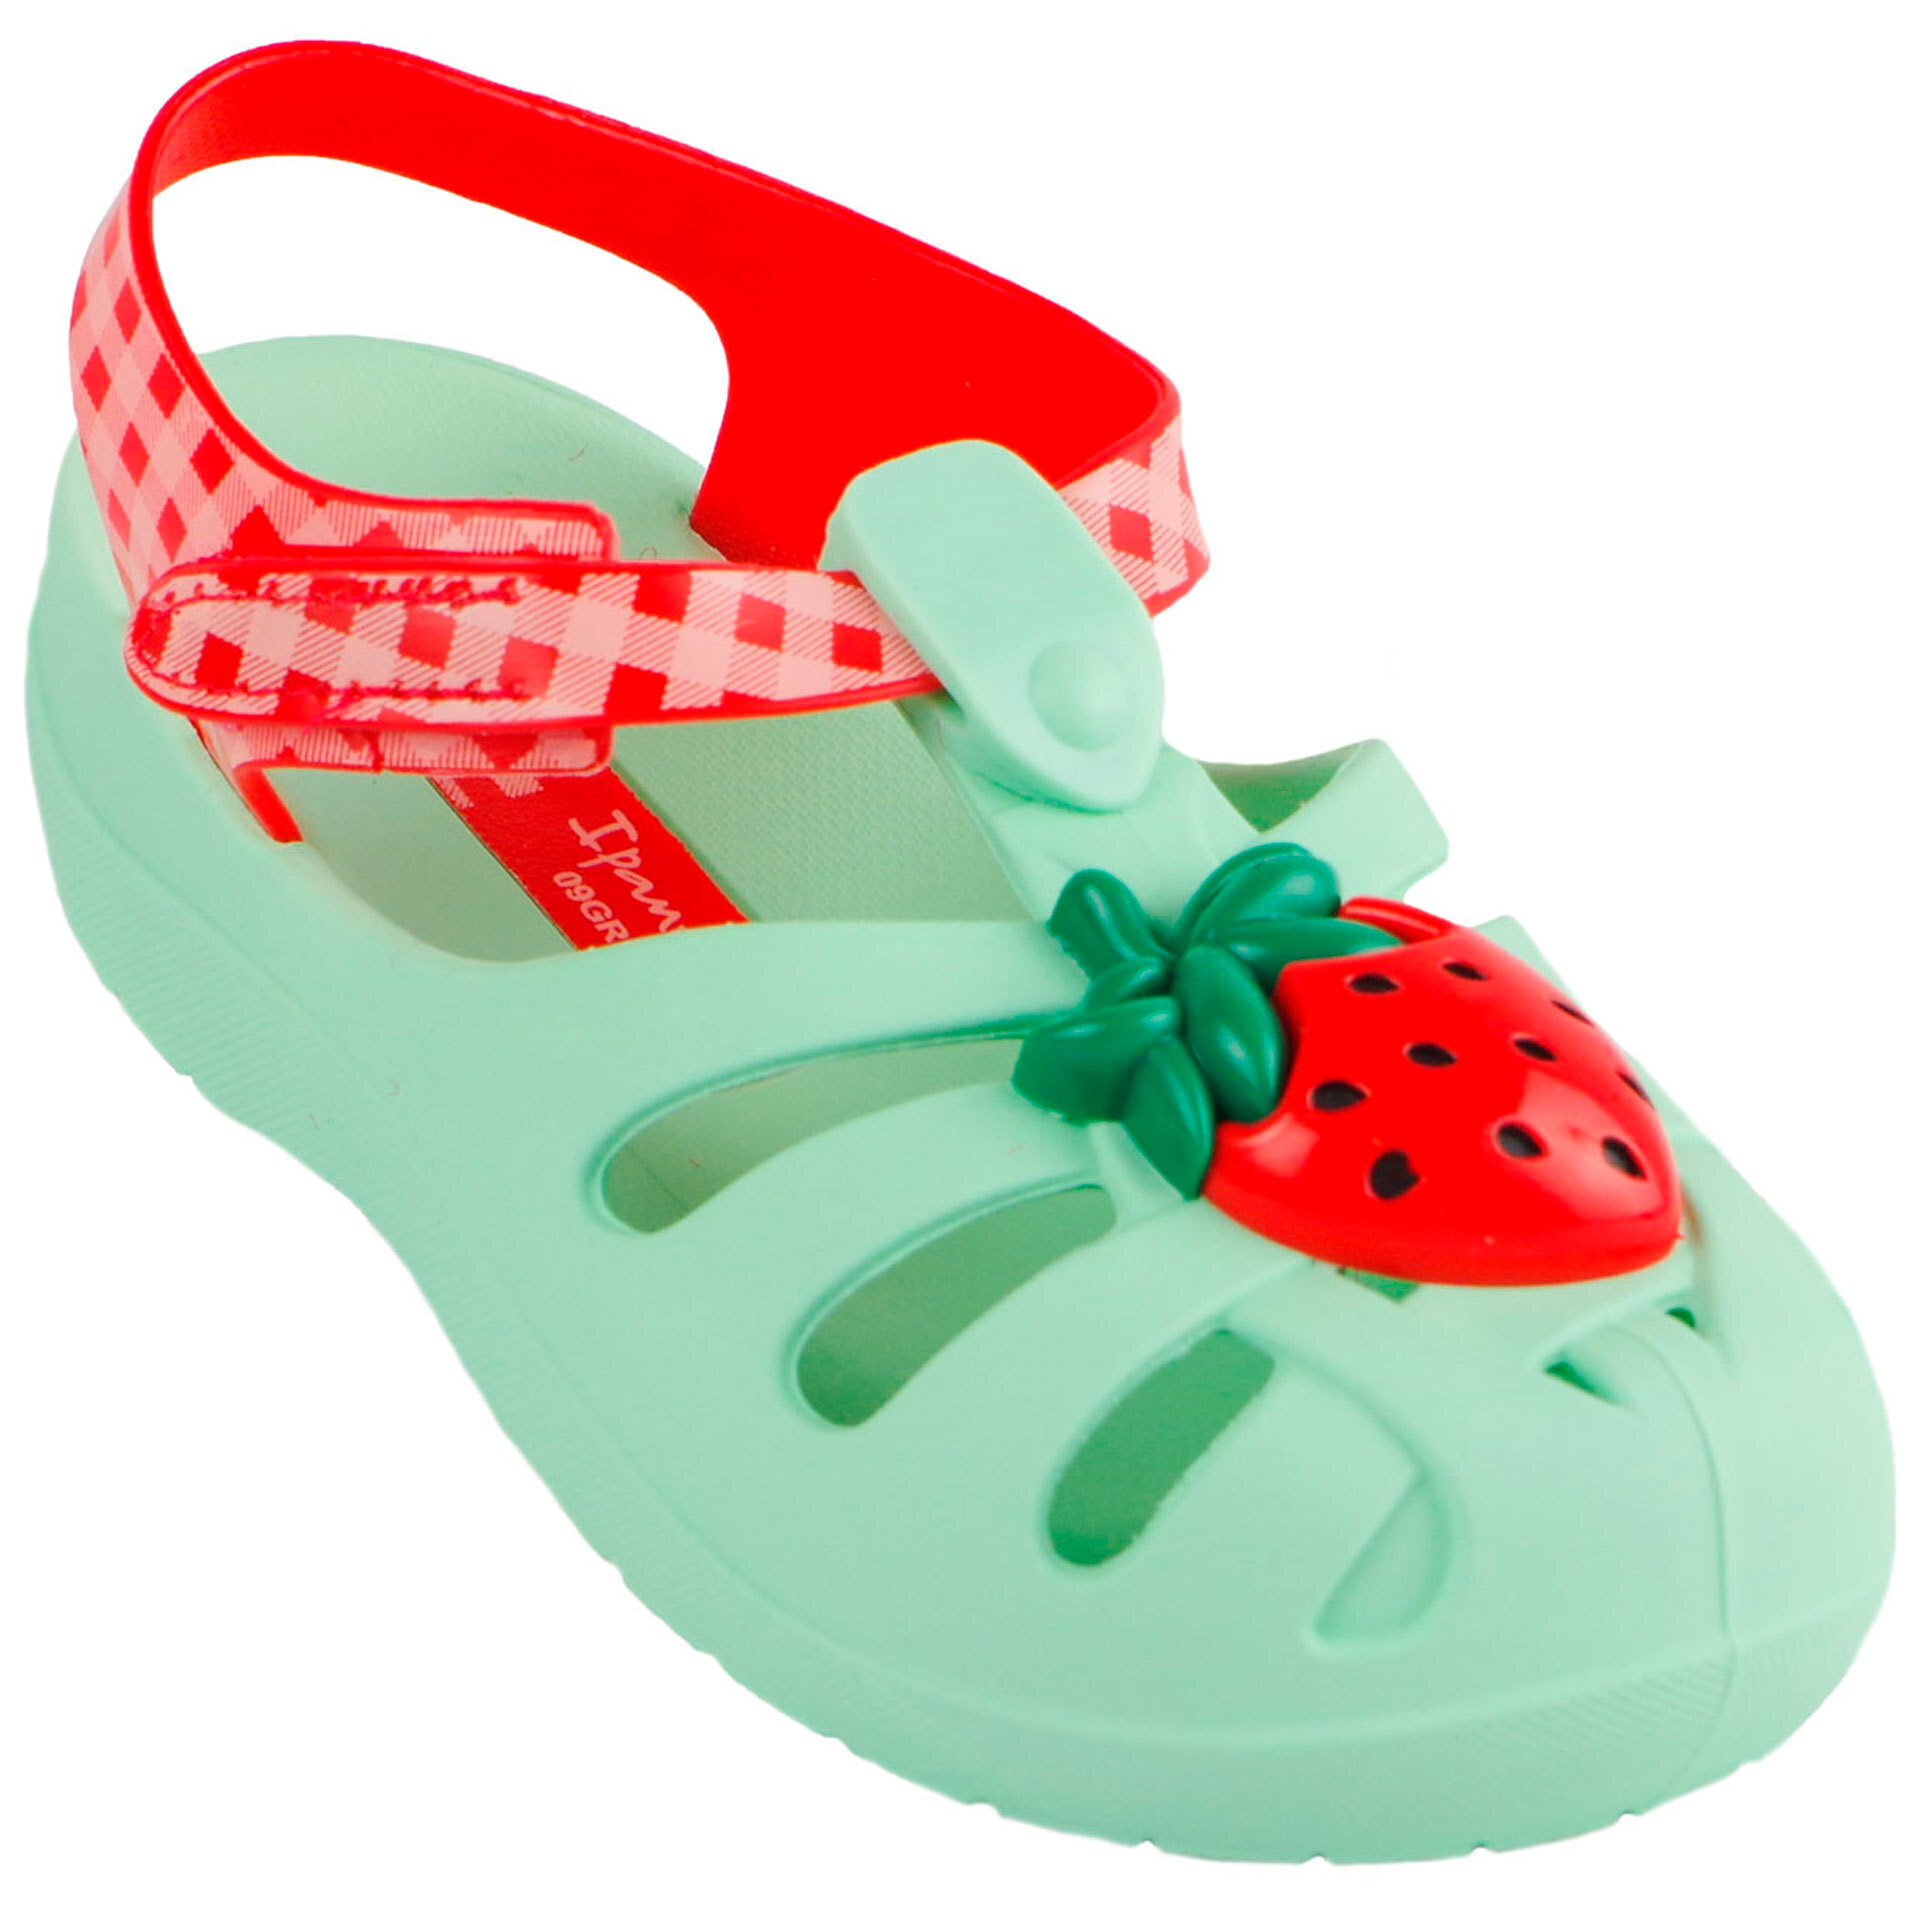 Пляжная обувь для девочки - босоножки детские (2008) 21-29 размеры, цвет Зеленый – Sole Kids